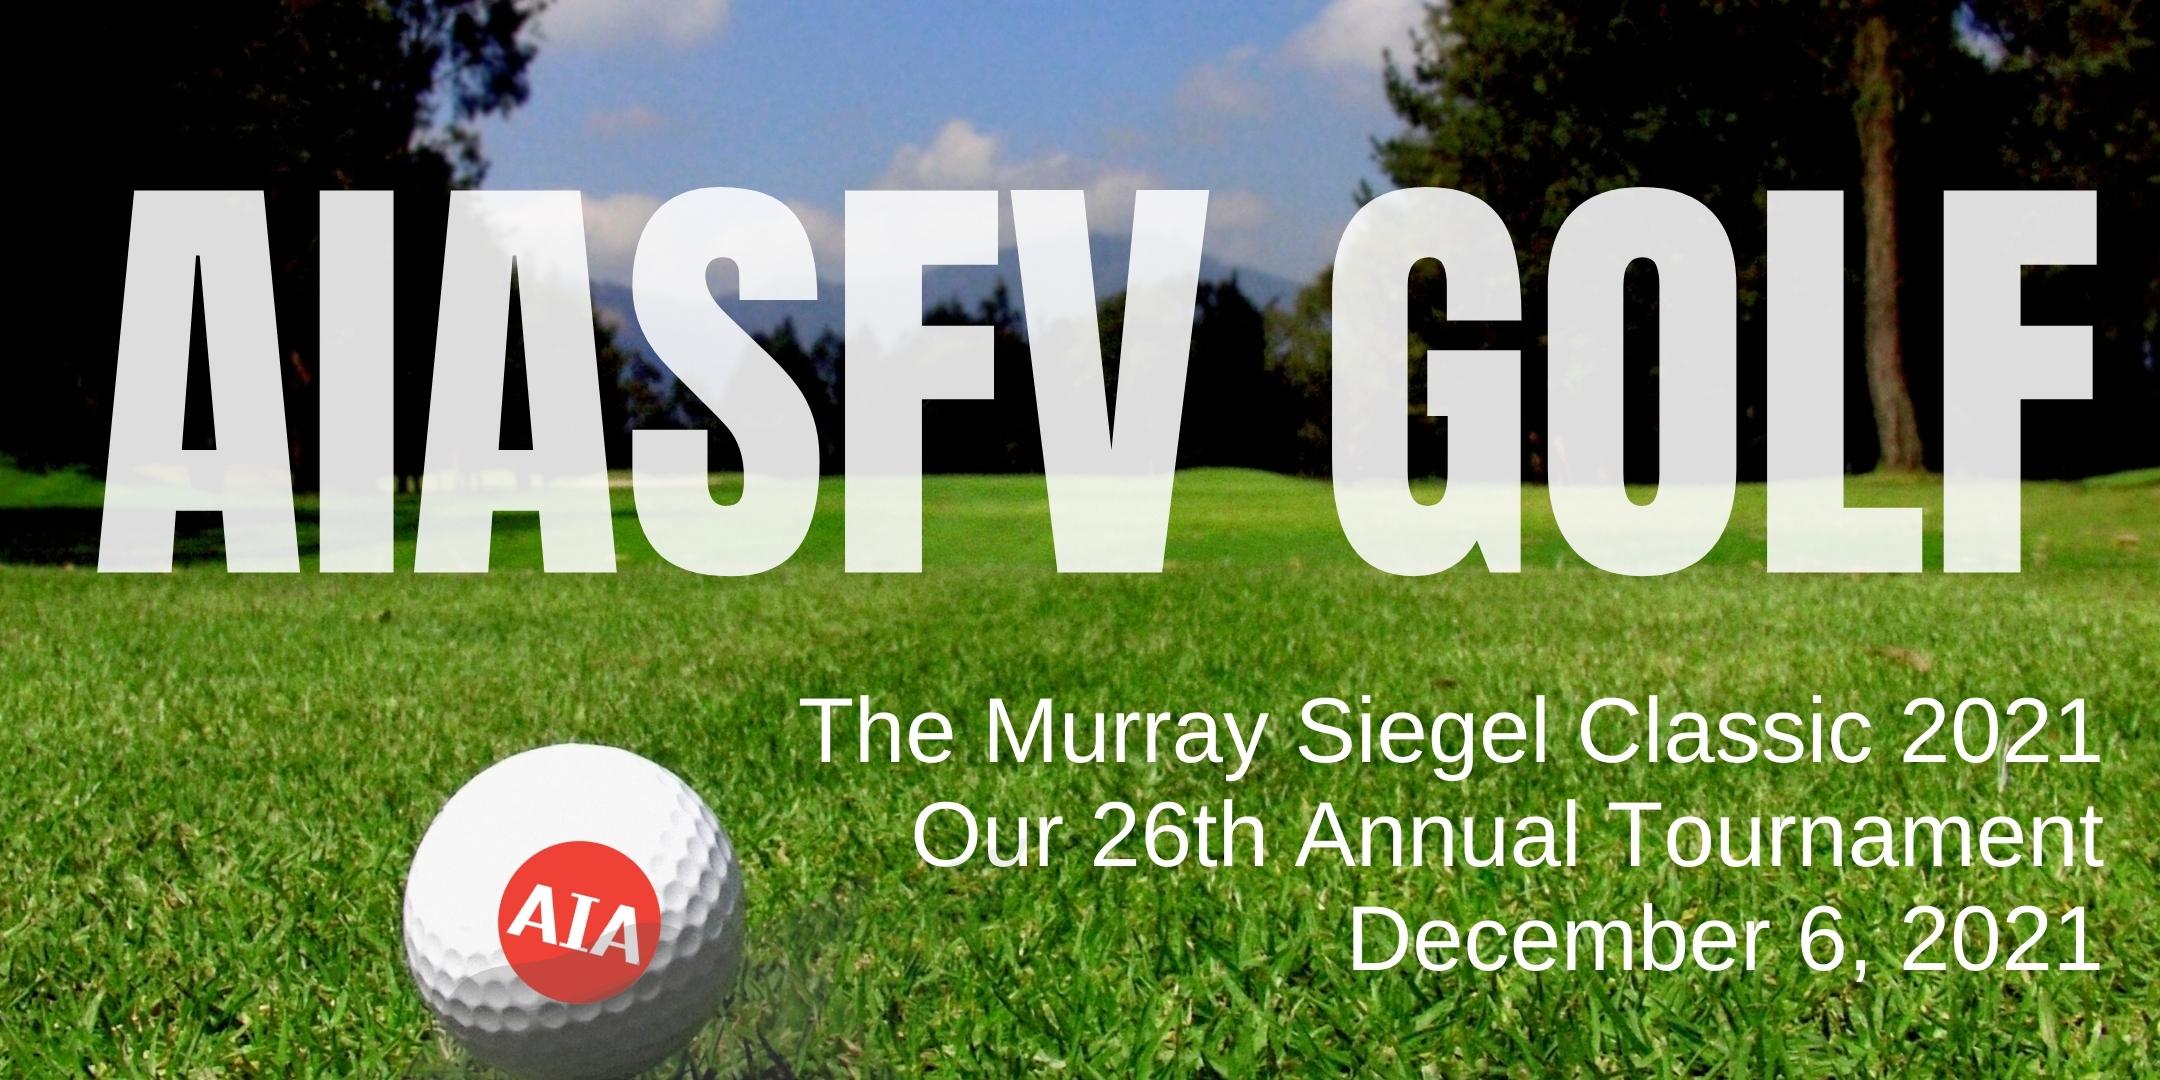 AIASFV Golf Tournament: Murray Siegel Classic 2021